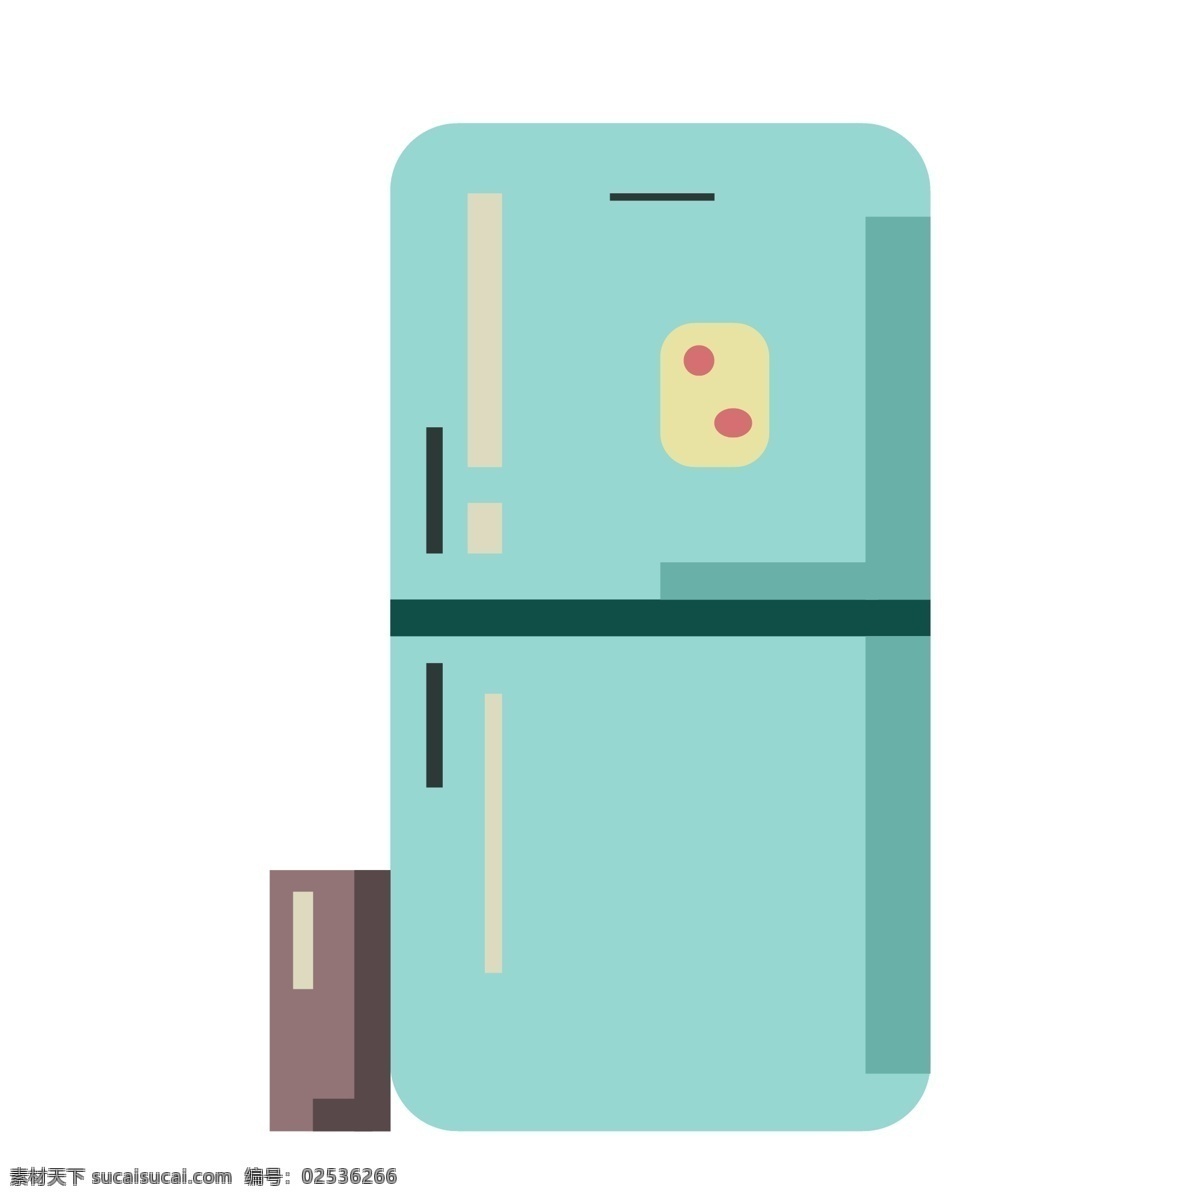 绿色 家电 电冰箱 冰箱 电器 家具